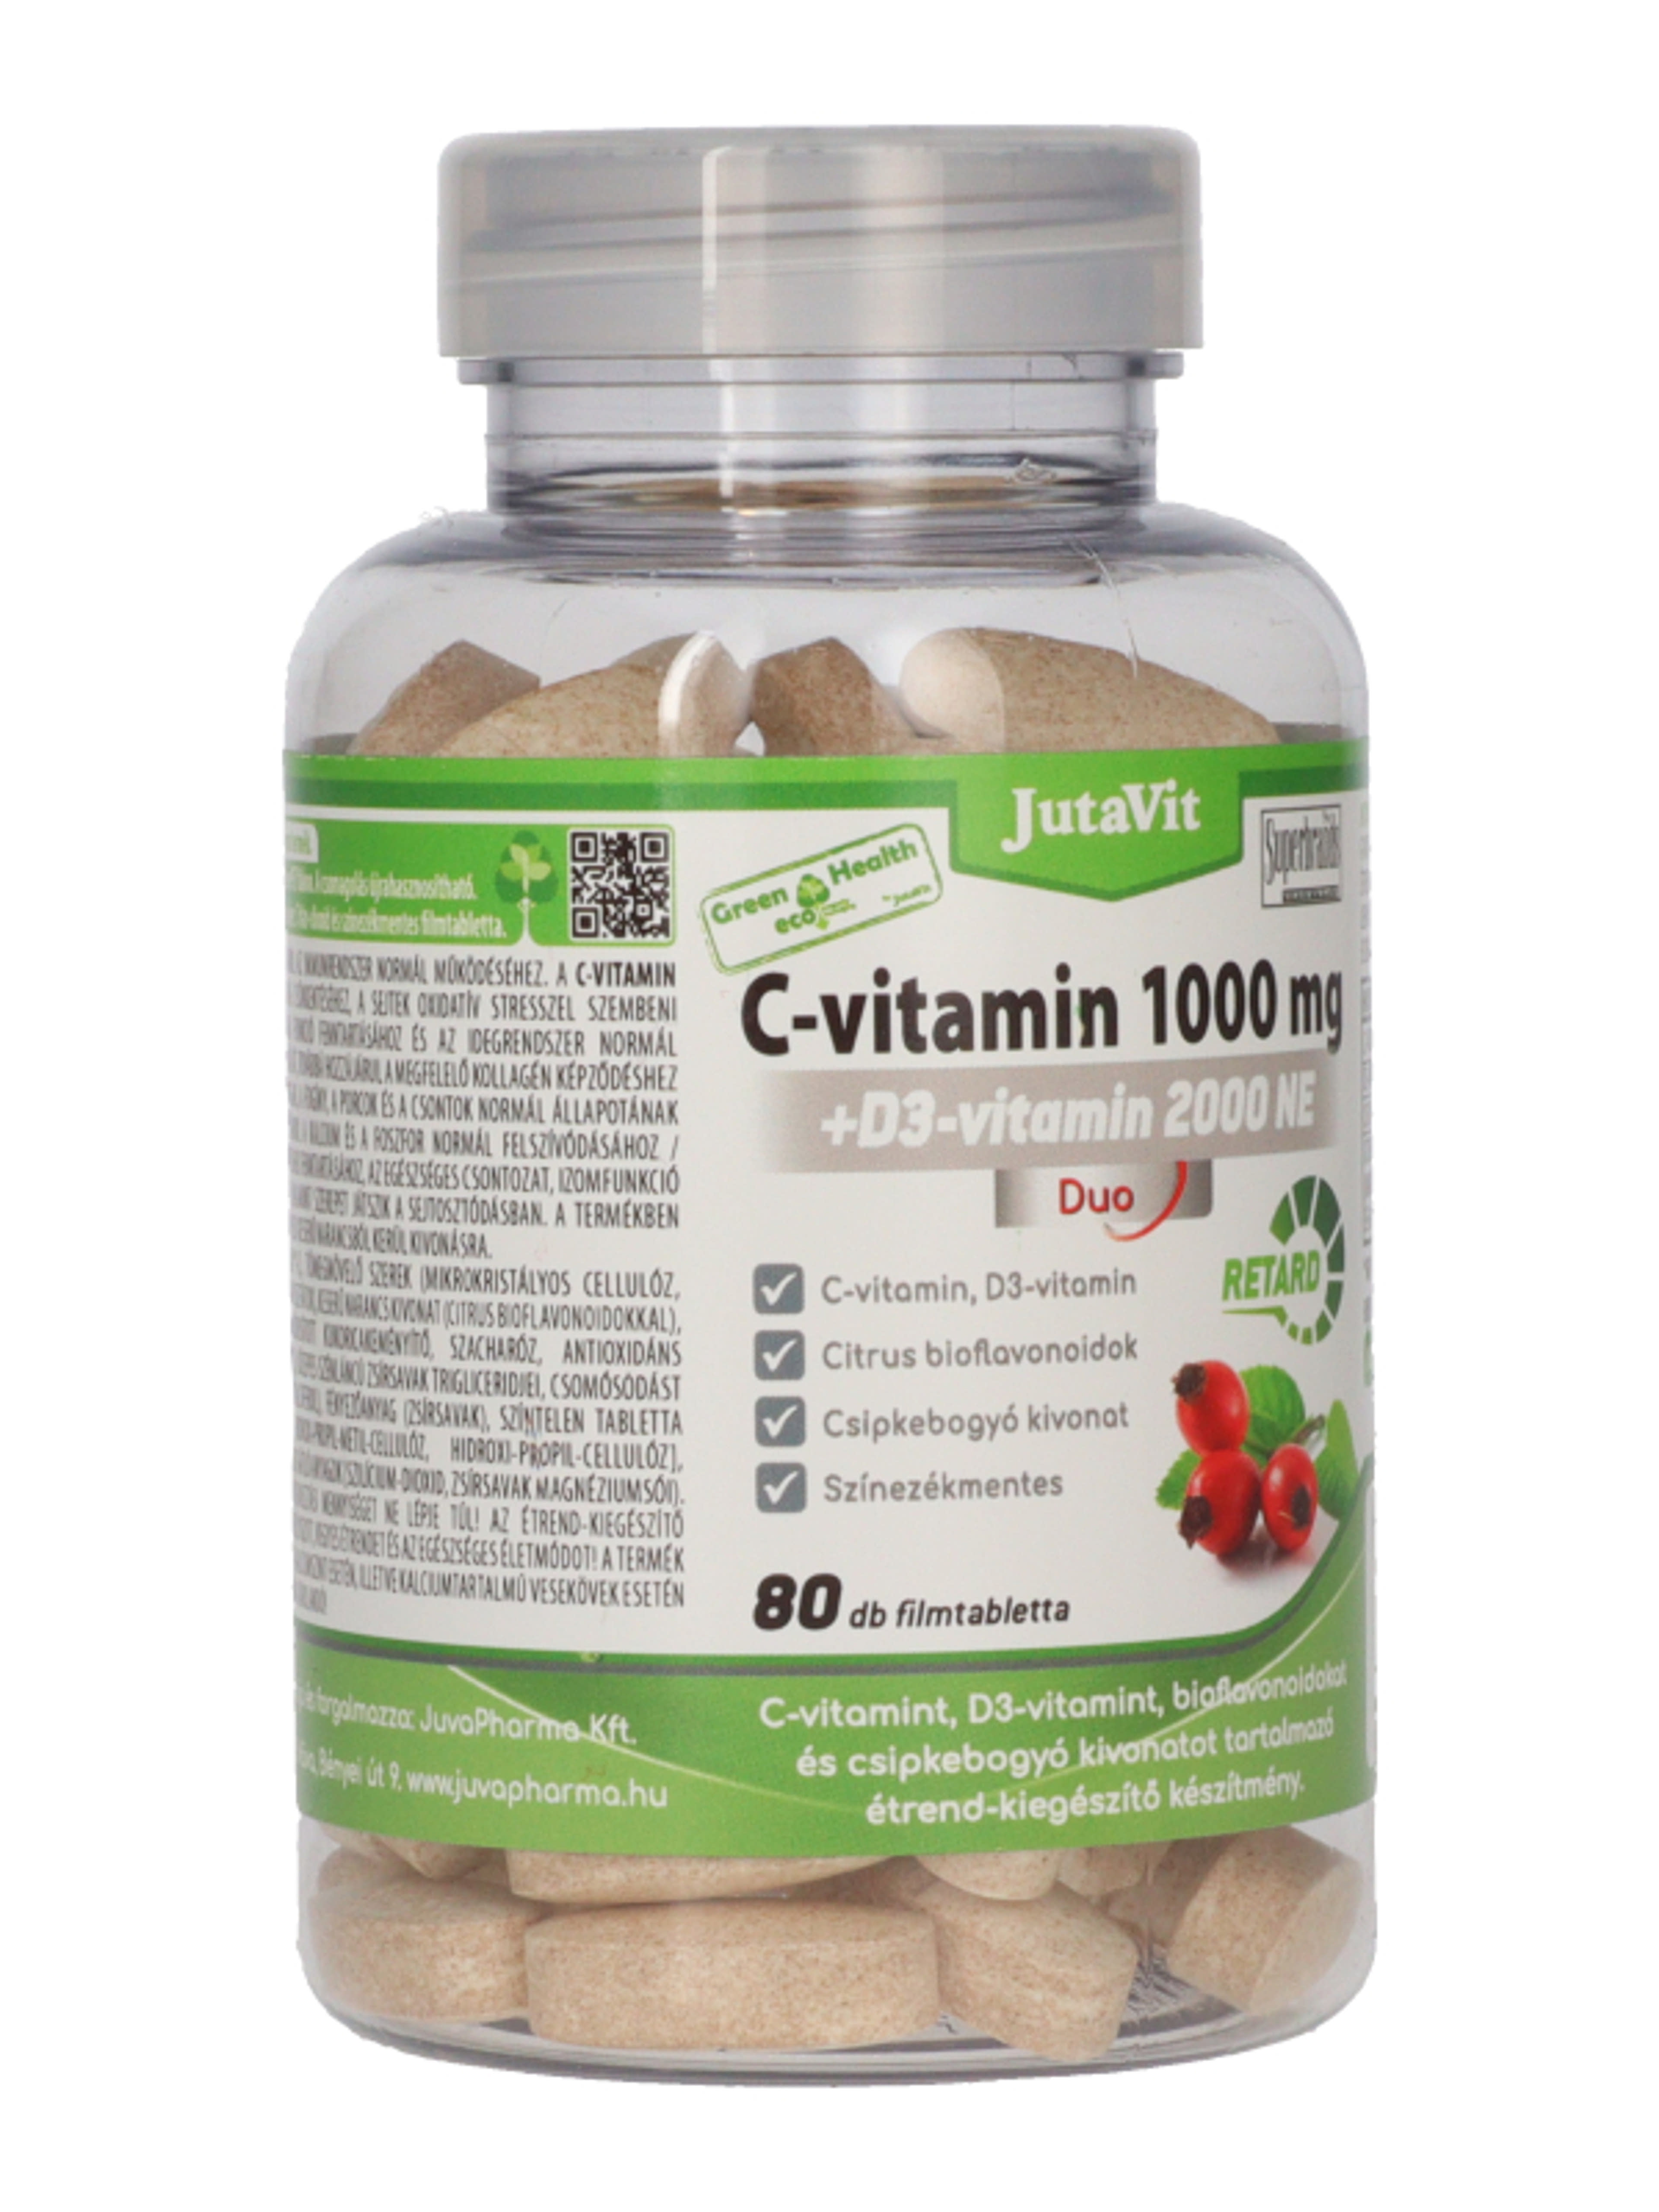 Jutavit Green & Health C-vitamin 1000 mg + D3- vitamin 2000 NE Duo étrend-kiegészítő filmtabletta - 80 db-4